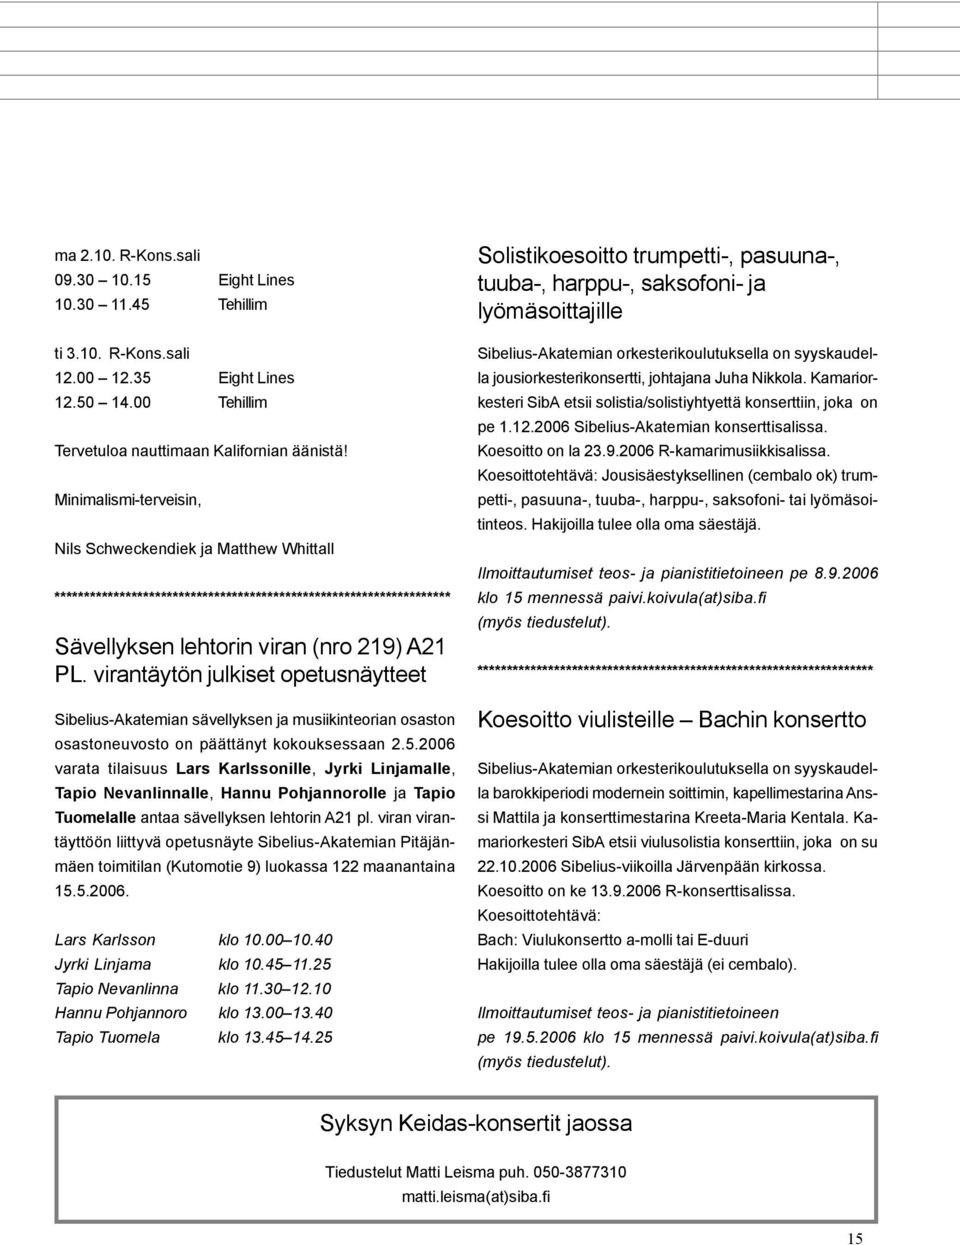 virantäytön julkiset opetusnäytteet Sibelius-Akatemian sävellyksen ja musiikinteorian osaston osastoneuvosto on päättänyt kokouksessaan 2.5.